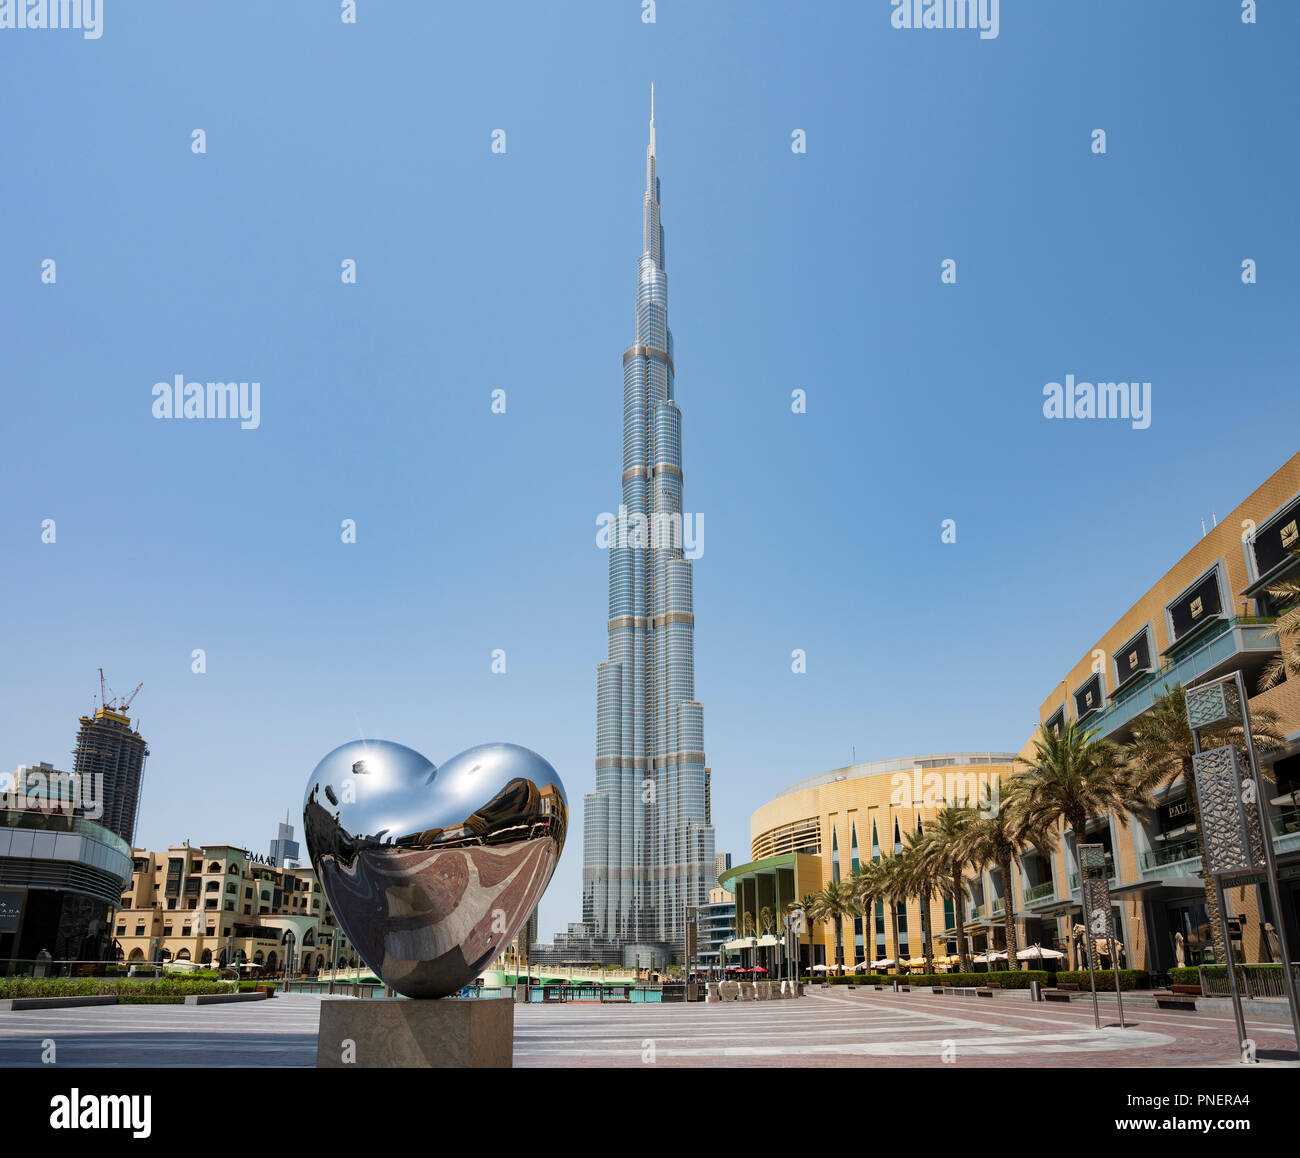 View of the Burj Khalifa skyscraper and Dubai Mall in Downtown Dubai, UAE Stock Photo